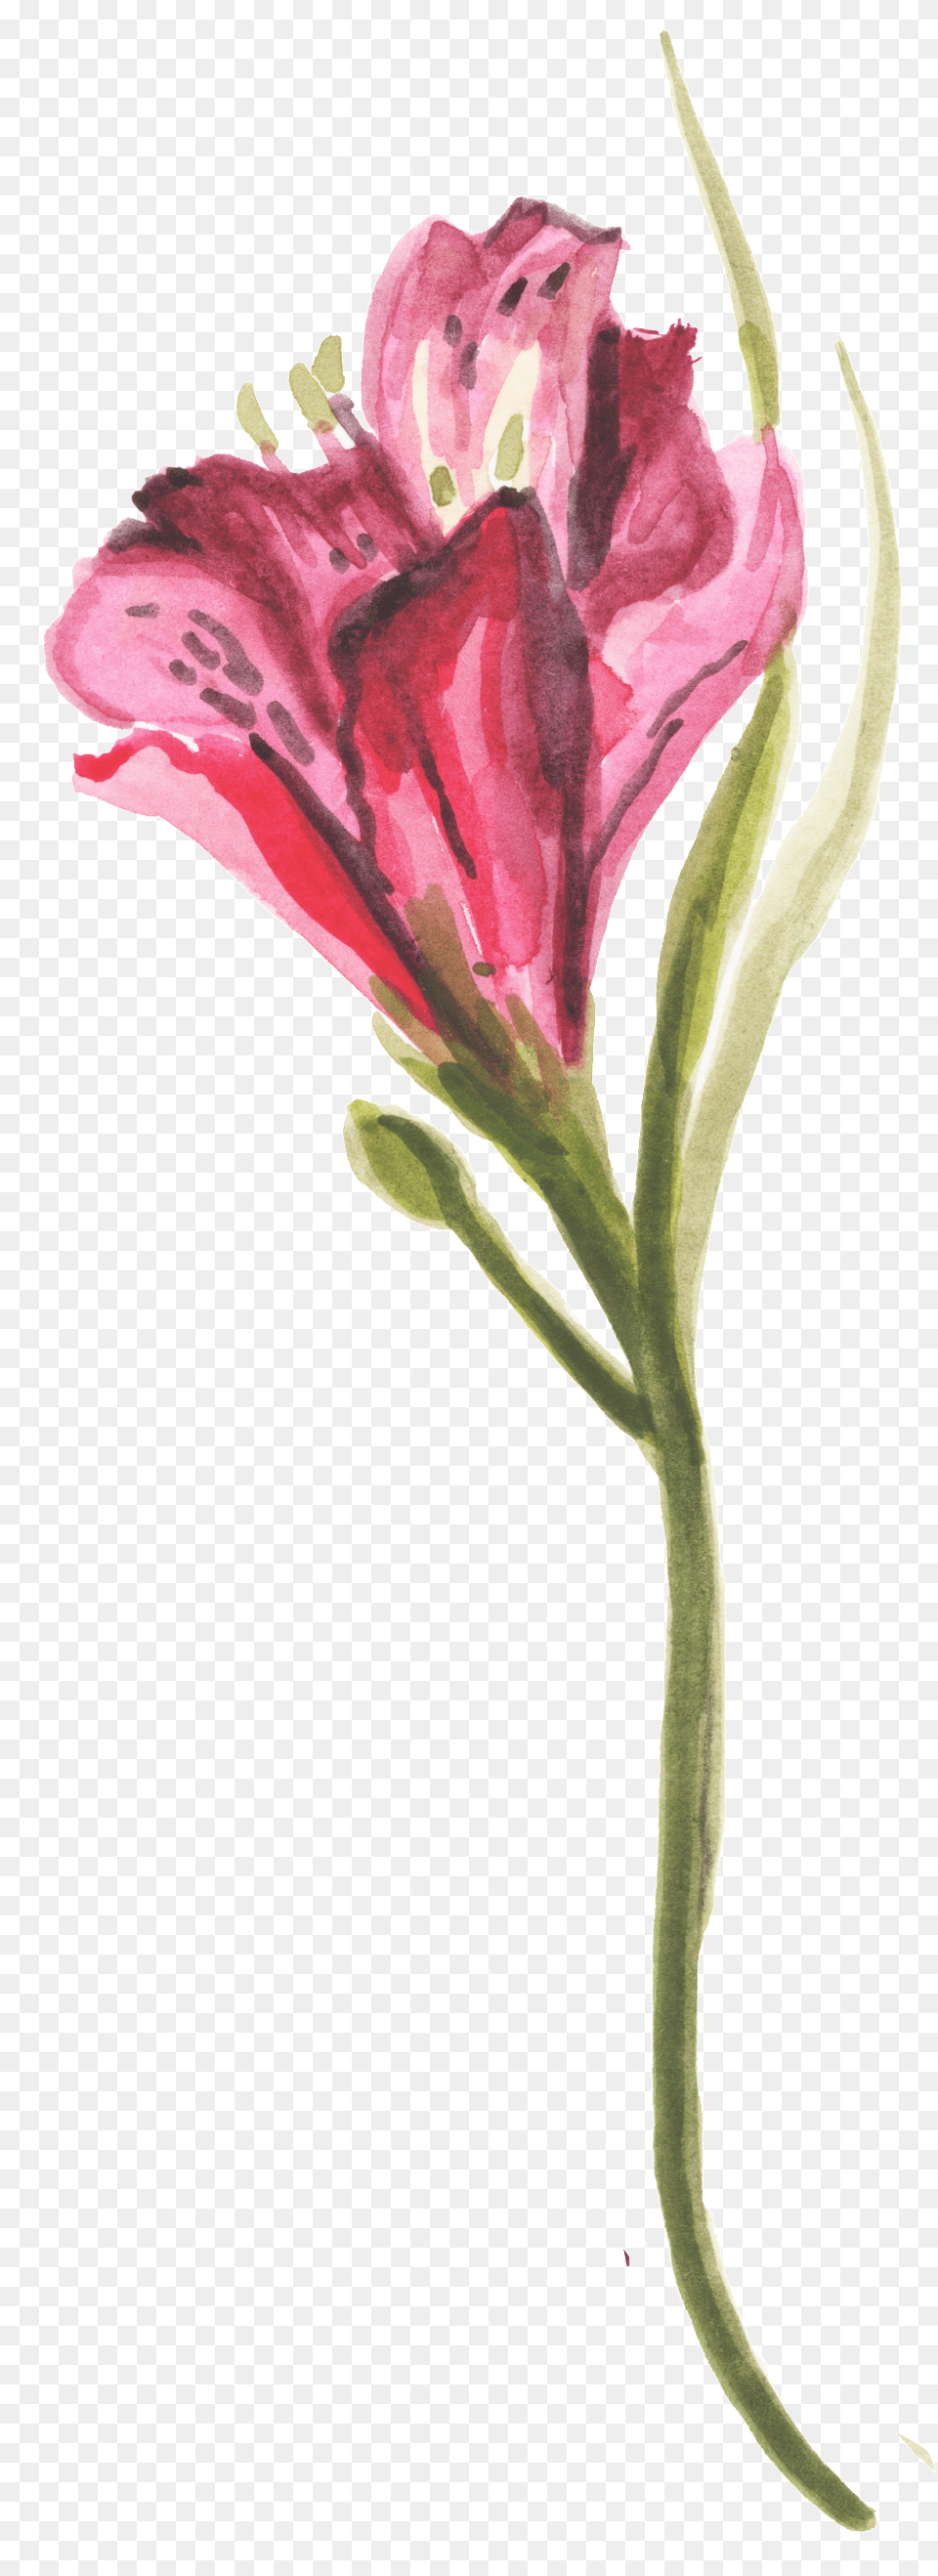 Red Plum Bouquet Transparent Decorative Rose, Flower, Plant, Petal Png